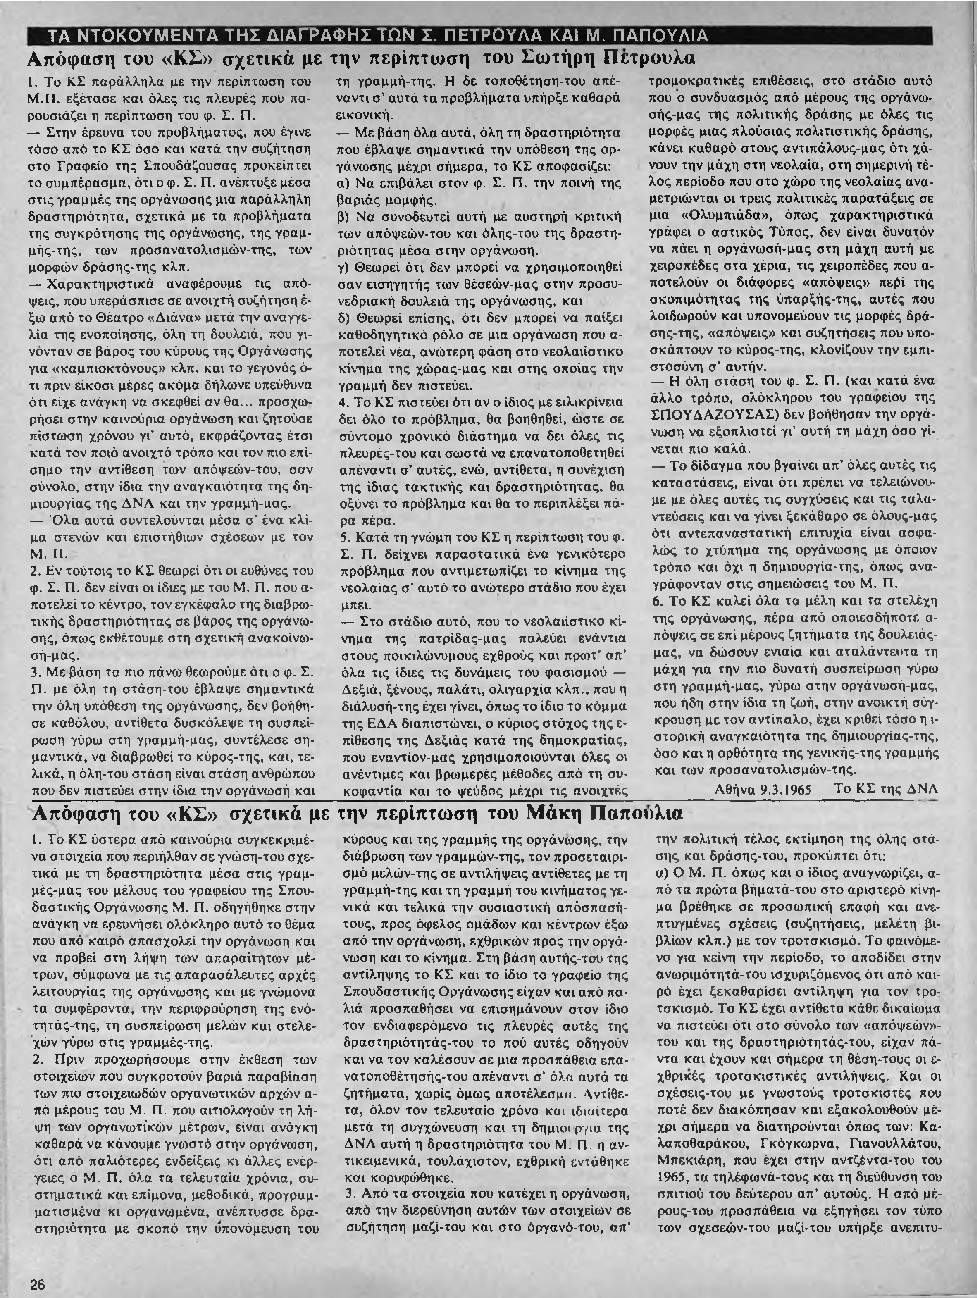 Σωτήρης Πέτρουλας και Μάκης Παπούλιας: Τα ντοκουμέντα της διαγραφής από ΔΝΛ Νεολαία Λαμπράκη, 09/03/1965. Βαριά μομφή στον Πέτρουλα, διαγραφή στον Παπούλια.